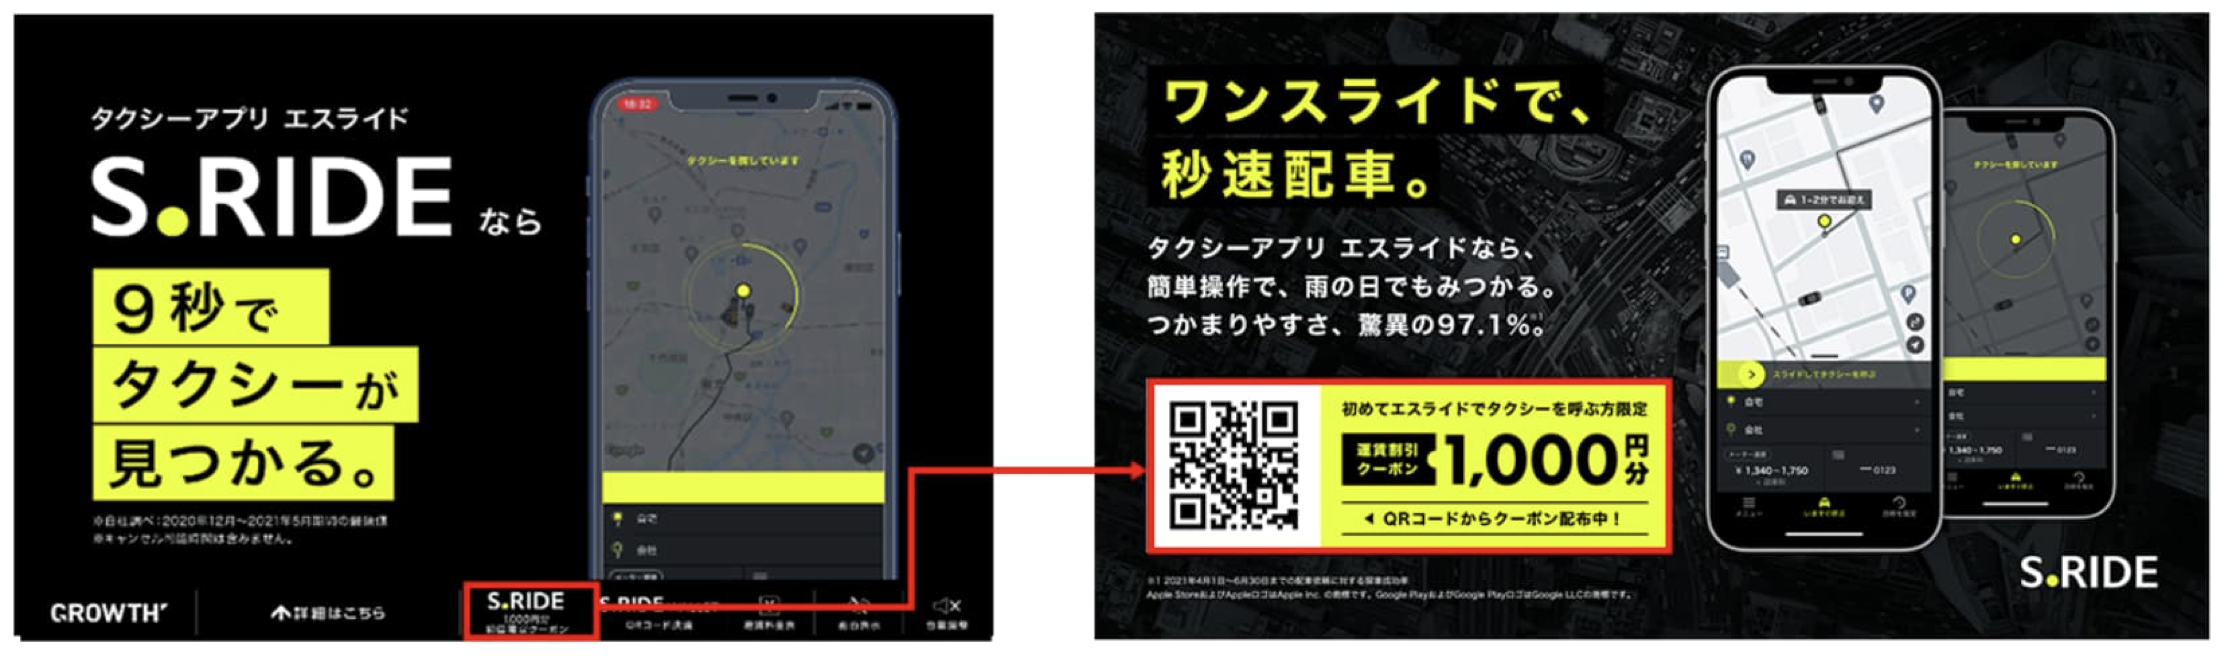 木更津で使えるタクシーアプリとクーポン情報